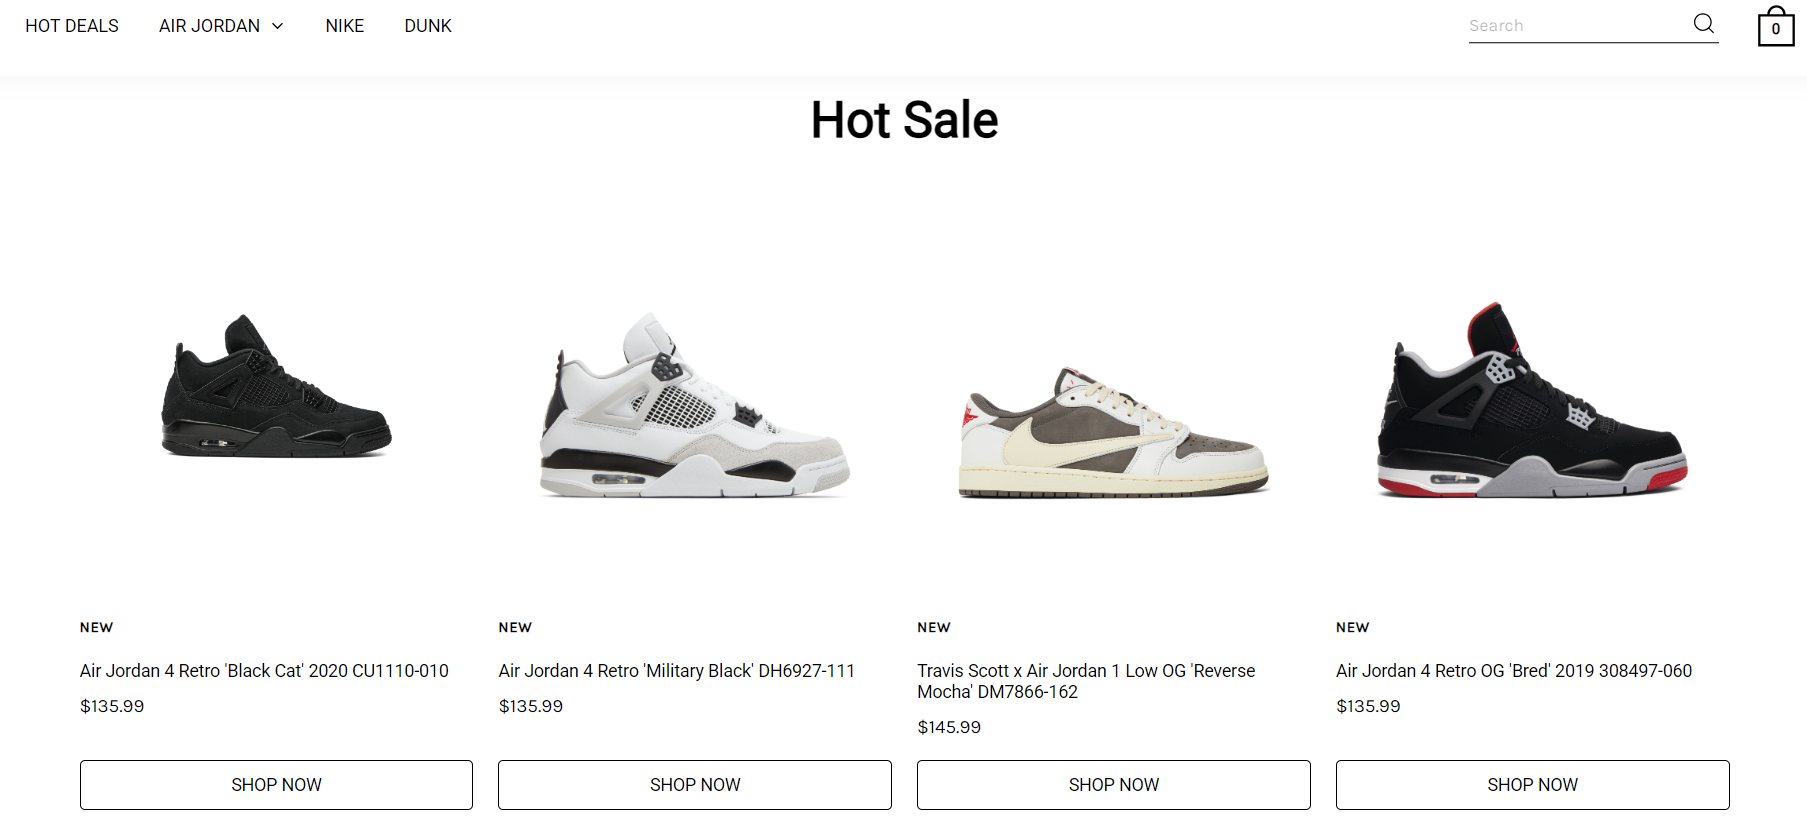 Shoes-retros.com Scam Store: A Fake Air Jordan Website